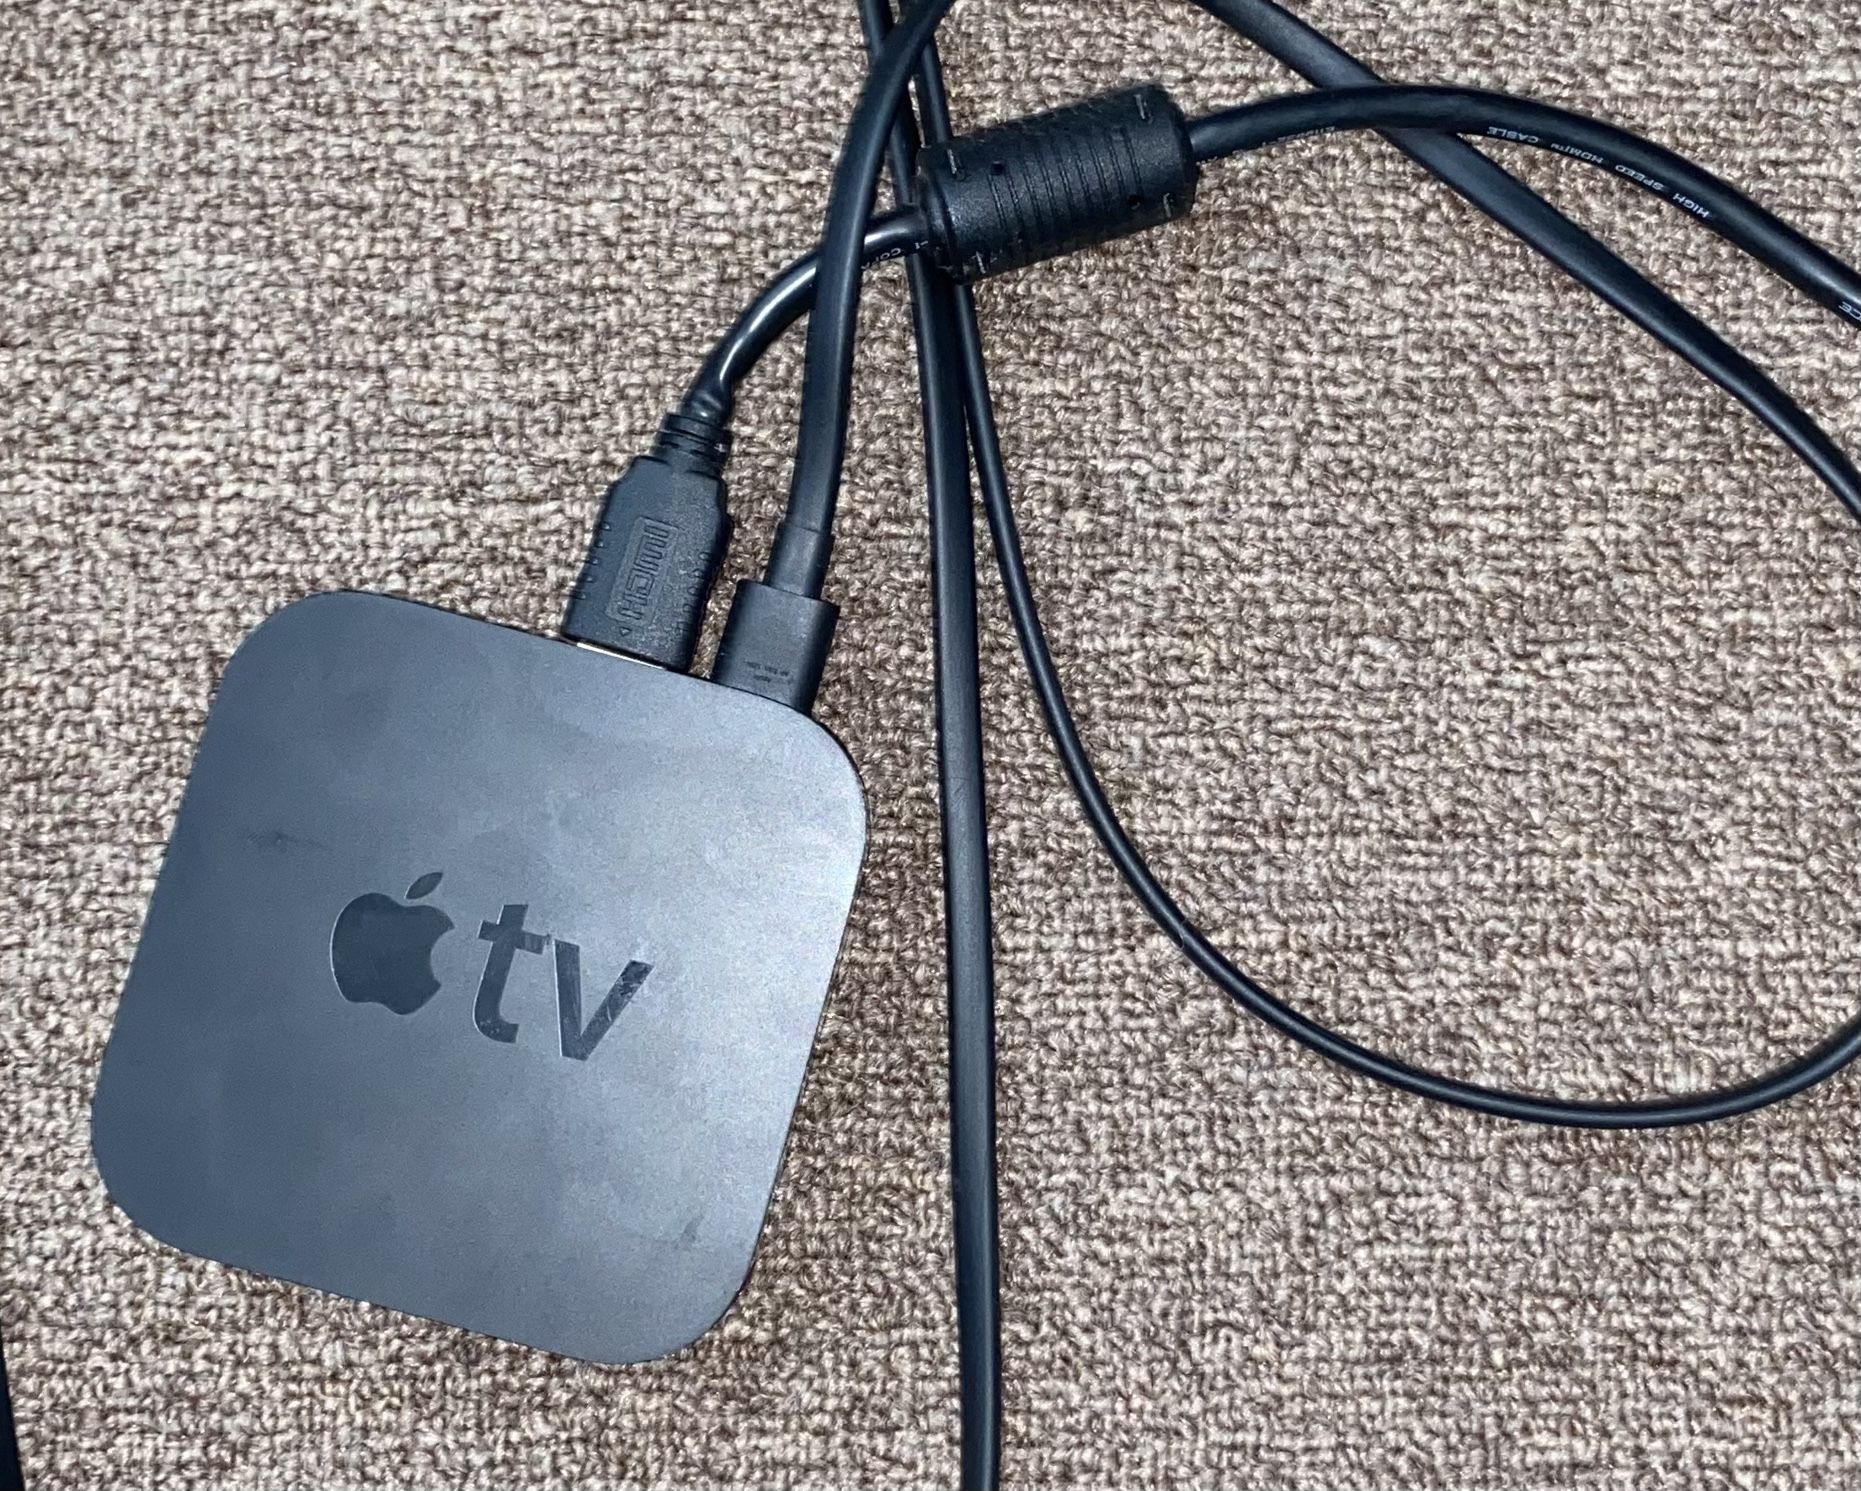 Apple TV A1469 3rd Gen (2012)